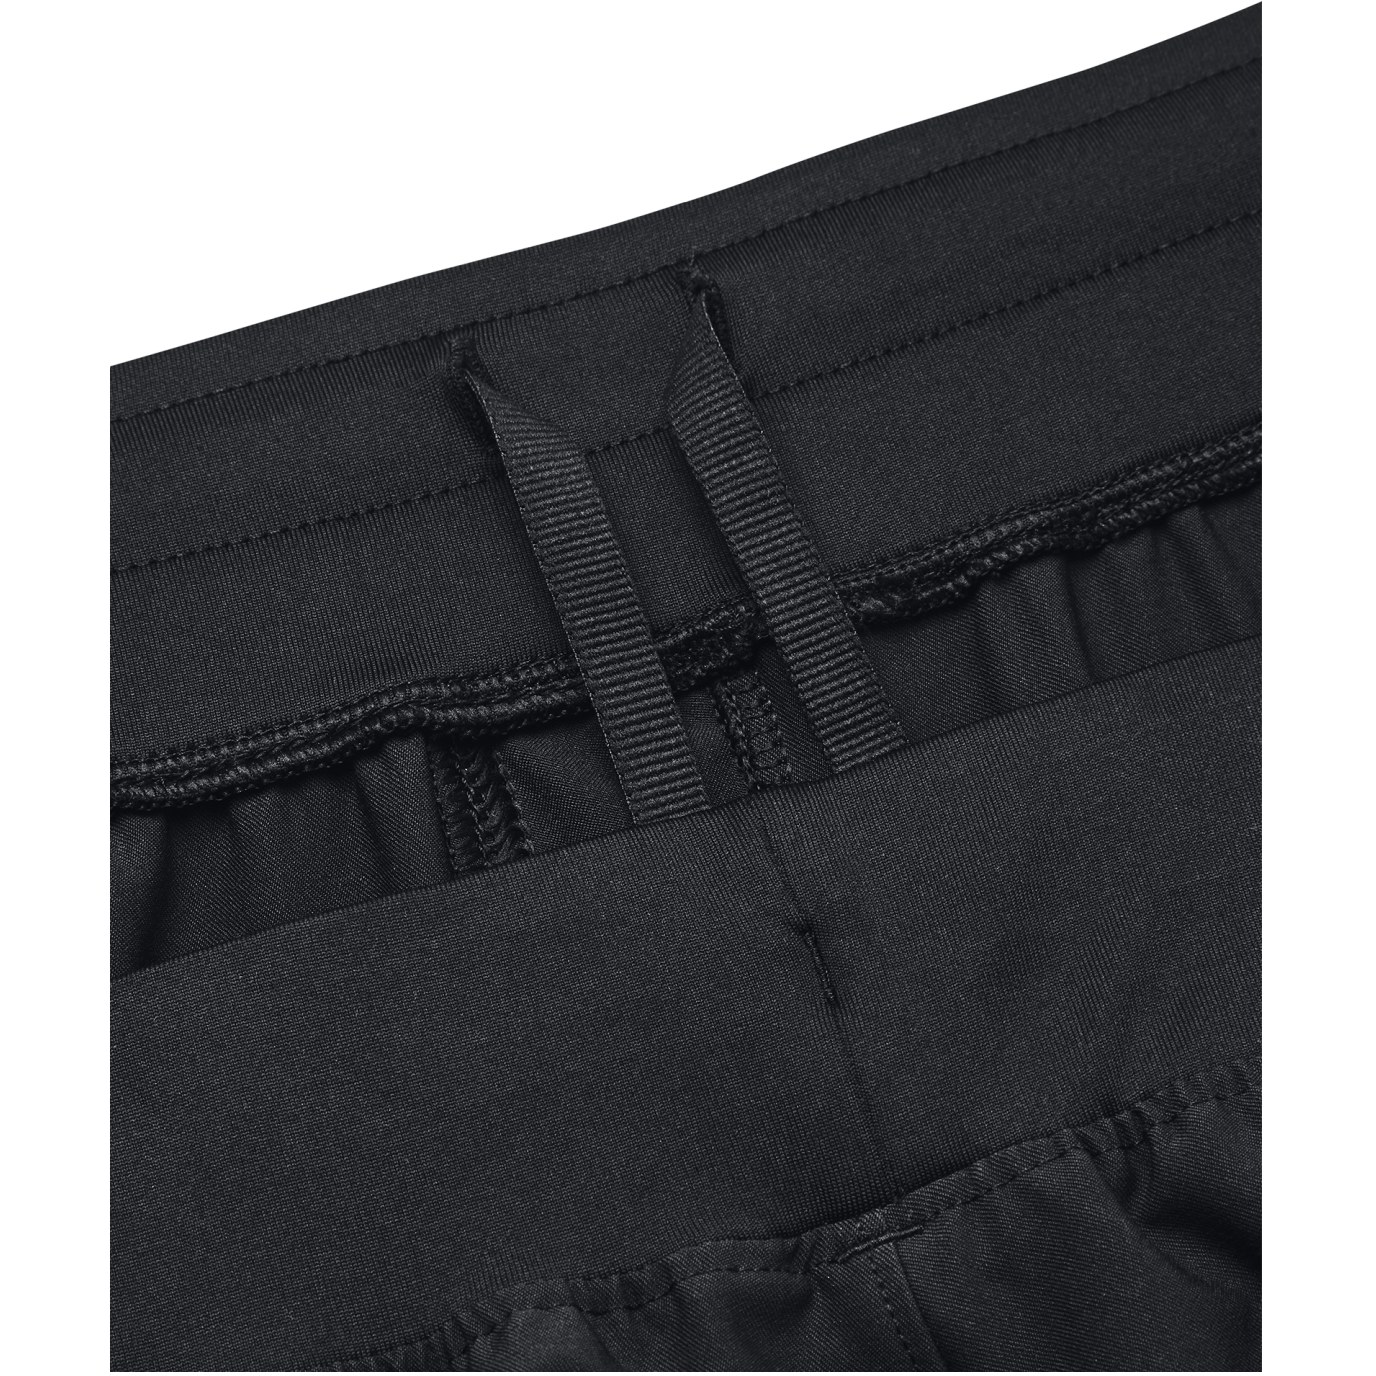 Under Armour HYBRID - Pantalon de survêtement - black/pitch gray/noir 